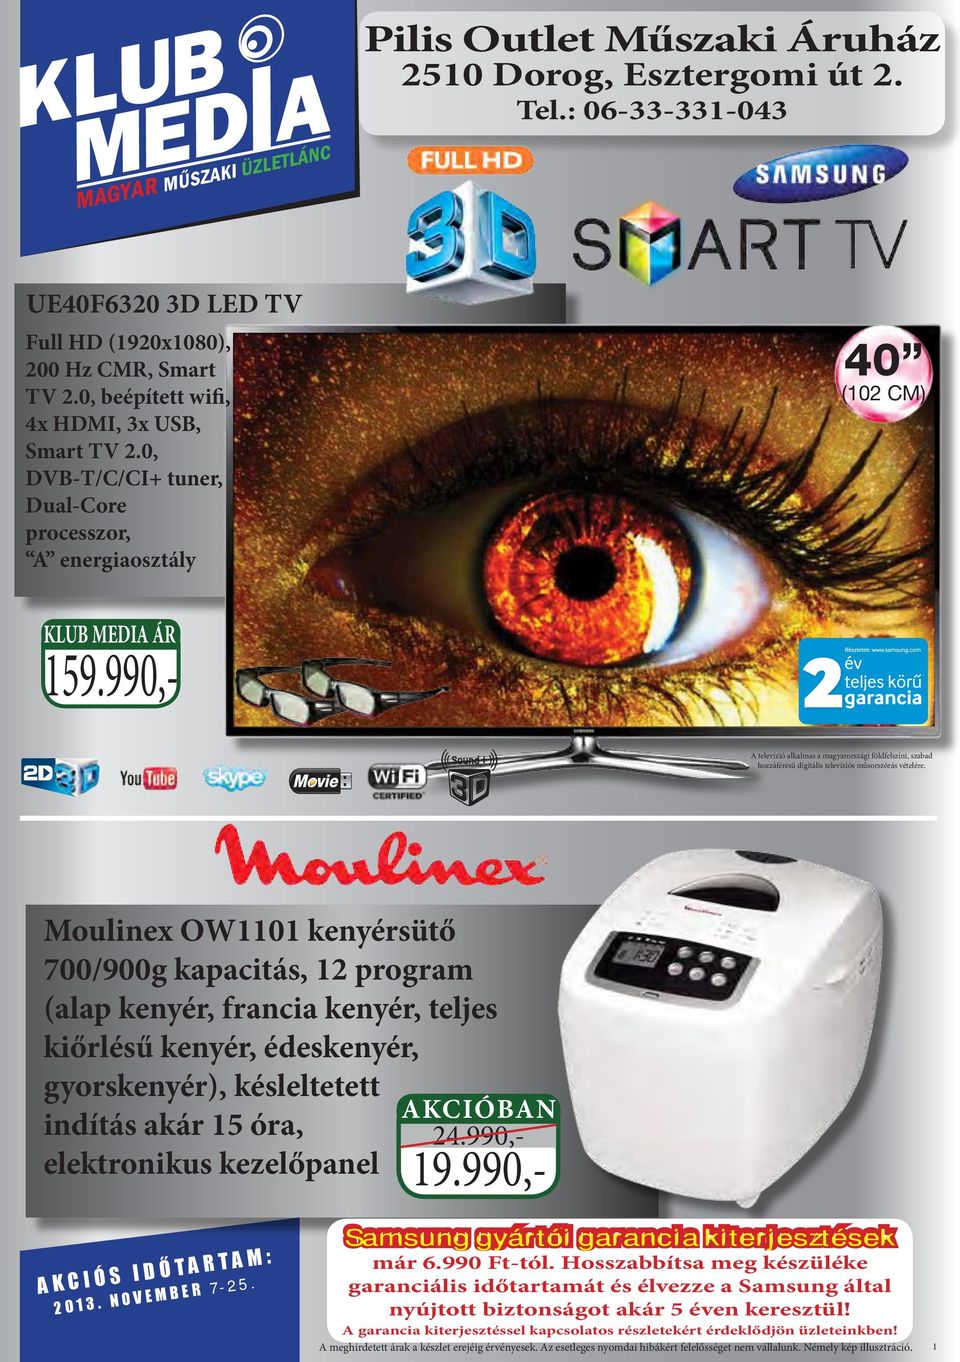 990,- A televízió alkalmas a magyarországi földfelszíni, szabad hozzáférésű digitális televíziós műsorszórás vételére.